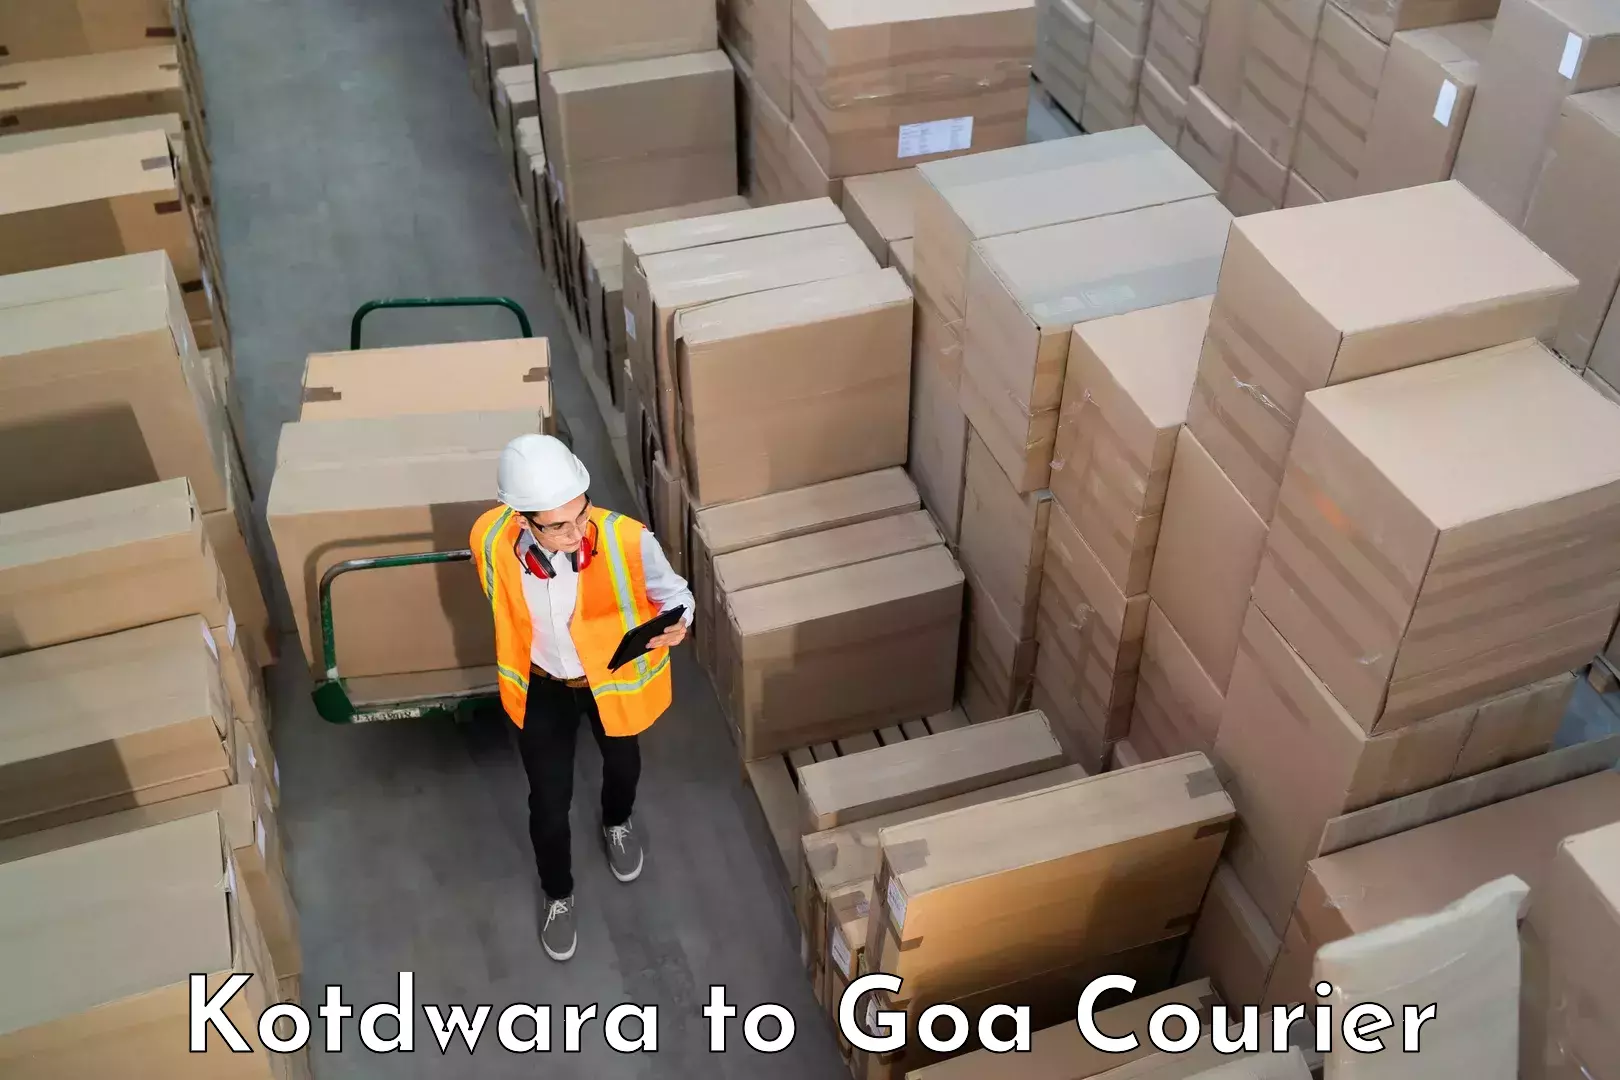 Luggage transfer service Kotdwara to Goa